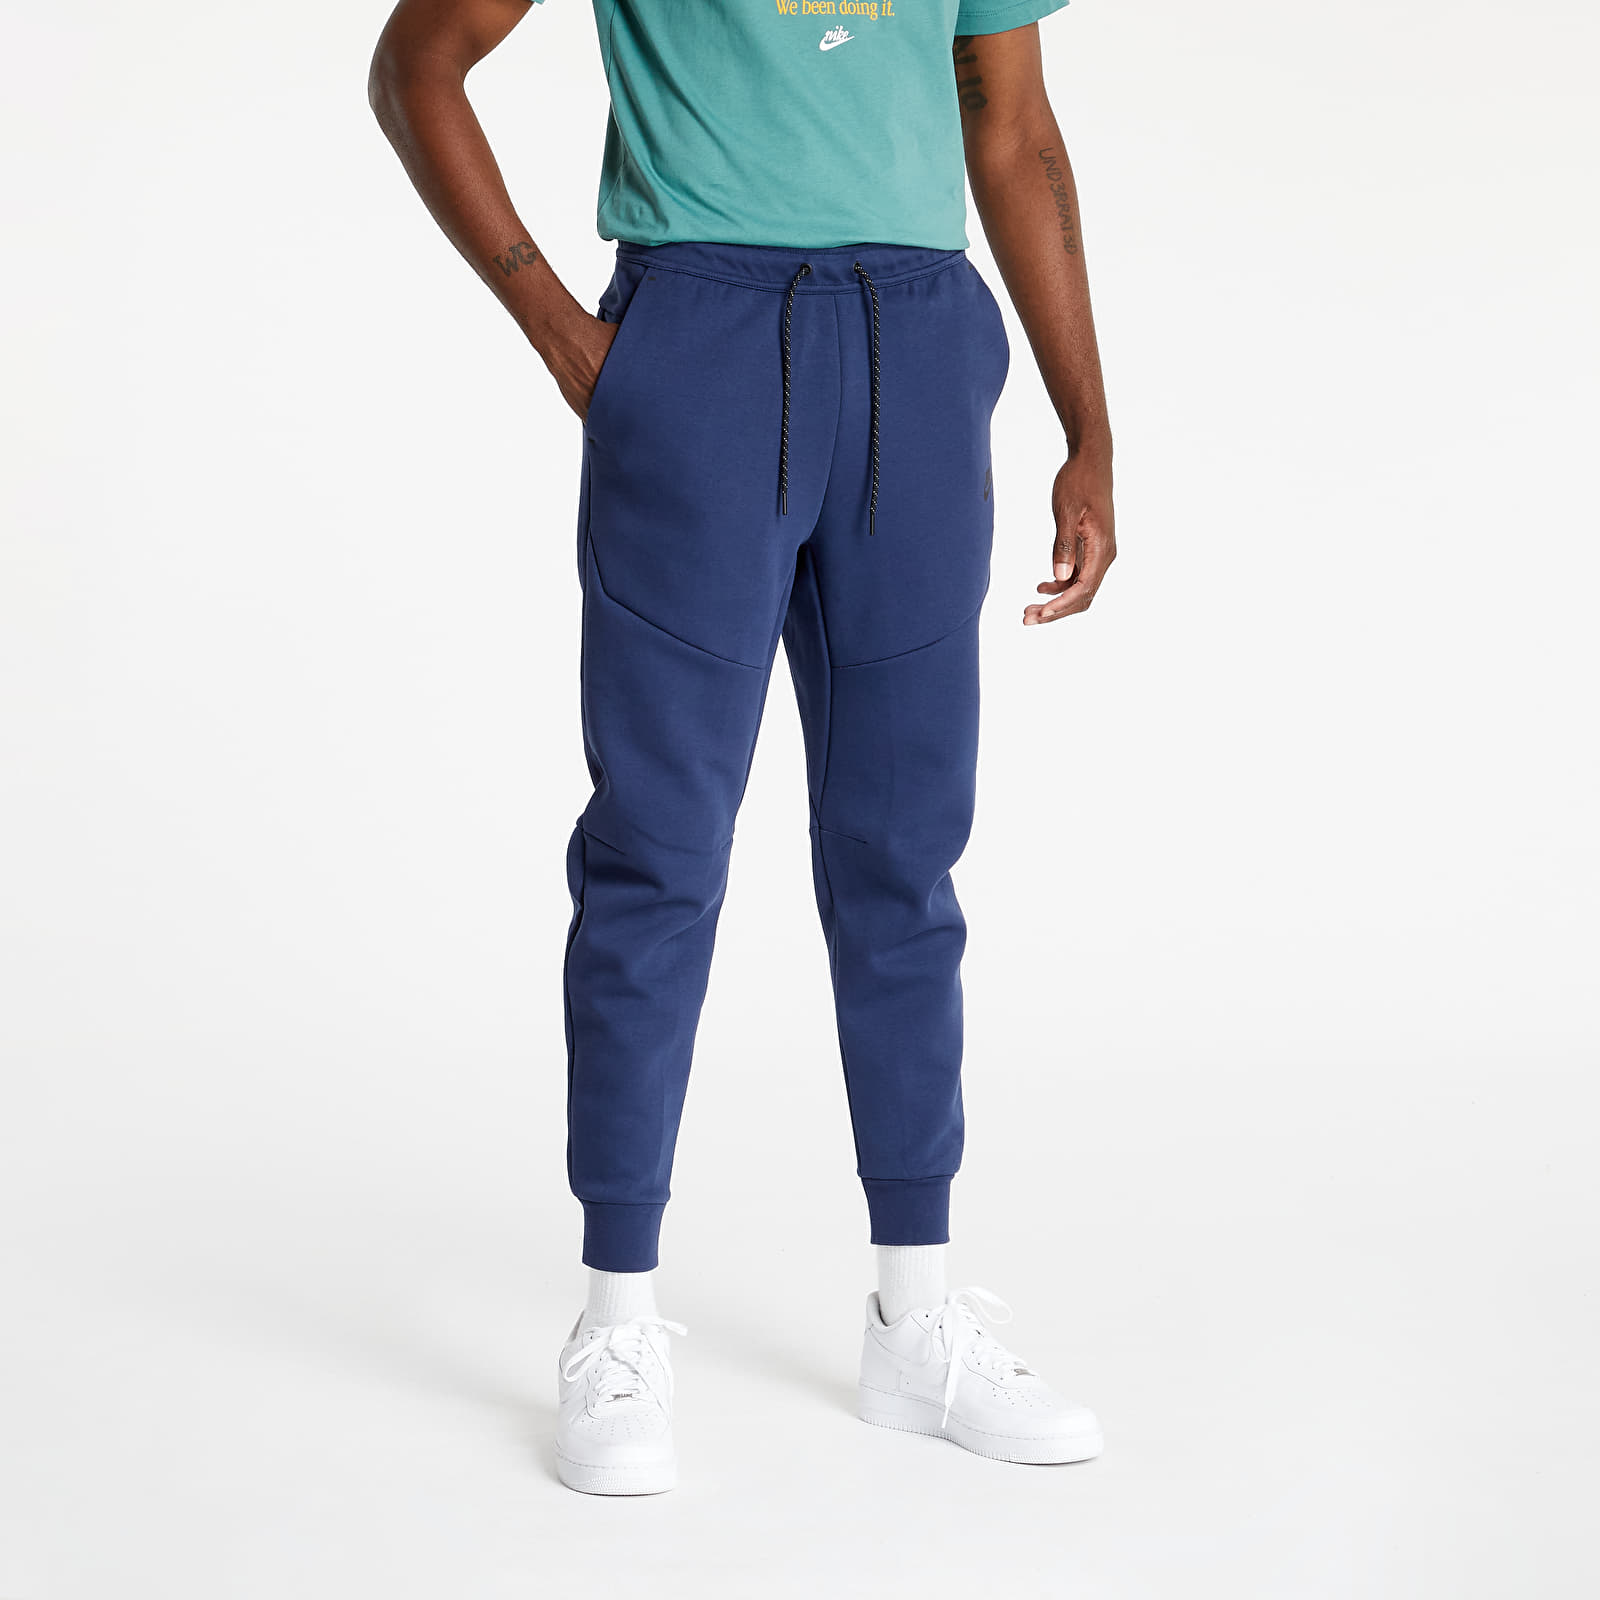 Анцузи Nike Sportswear Tech Fleece Men’s Joggers Midnight Navy/ Black 804136